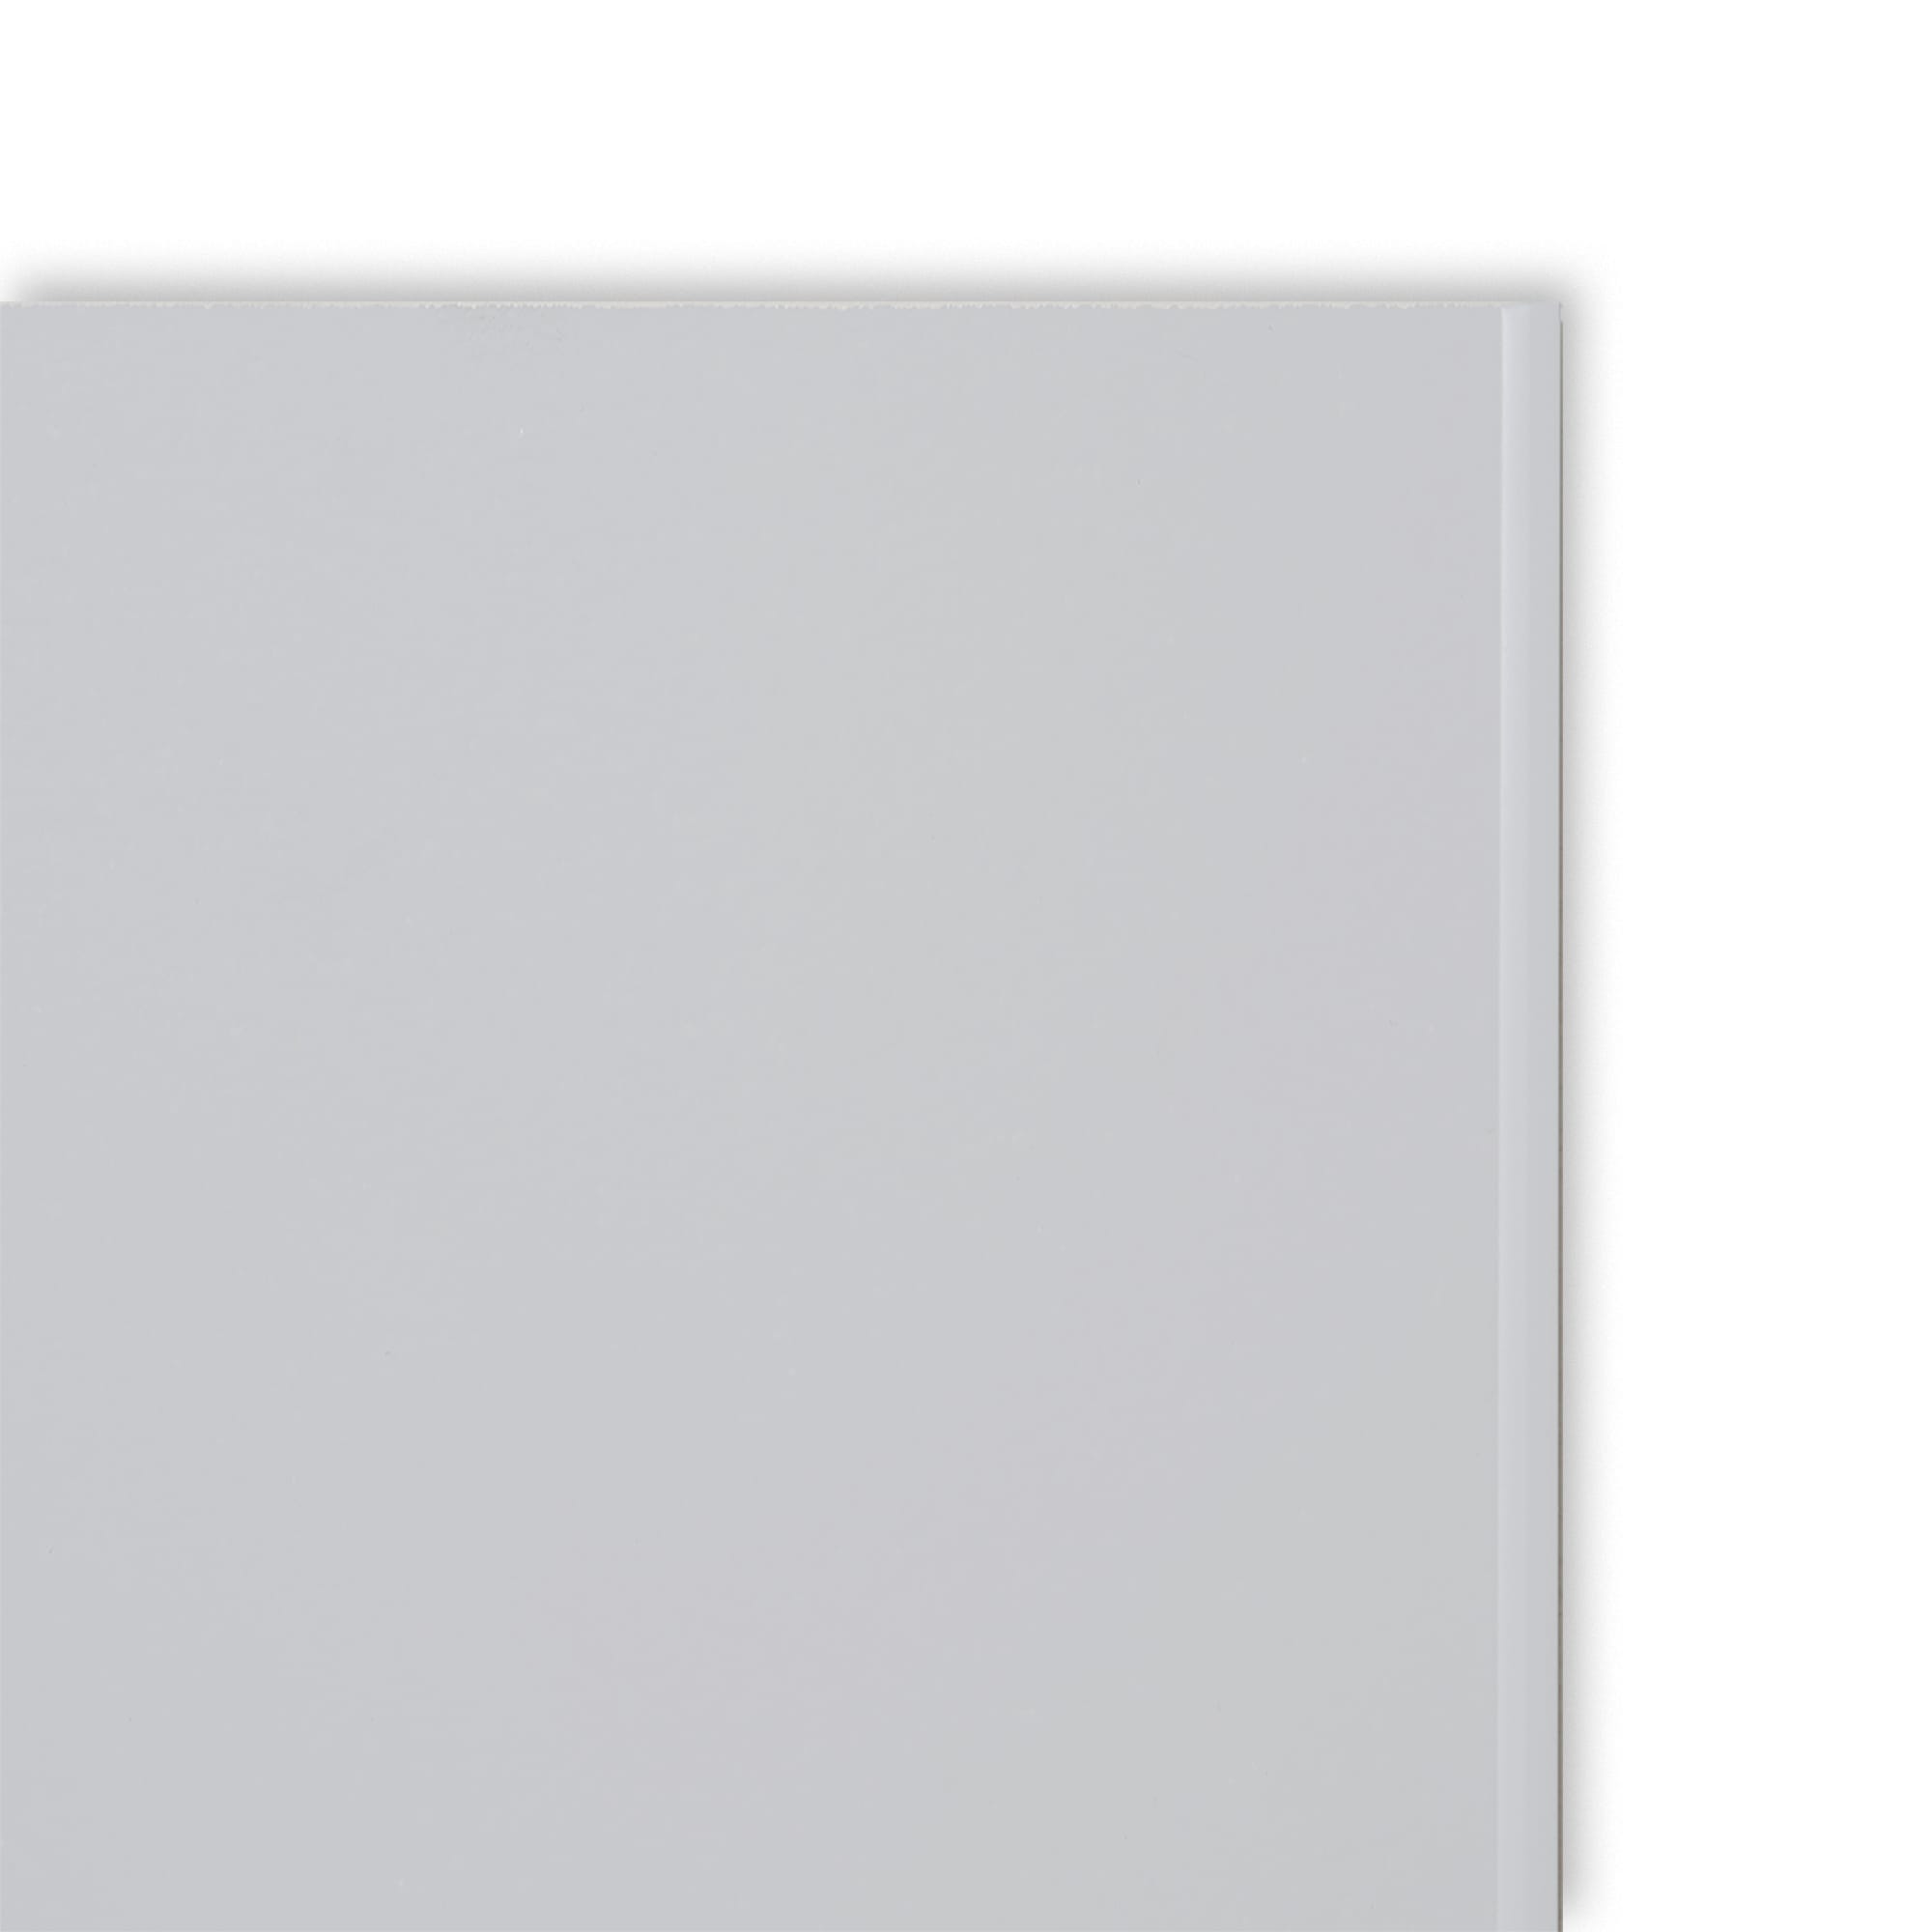 塗装のキッチンパネル マットグレー KB-OT001-08-G248